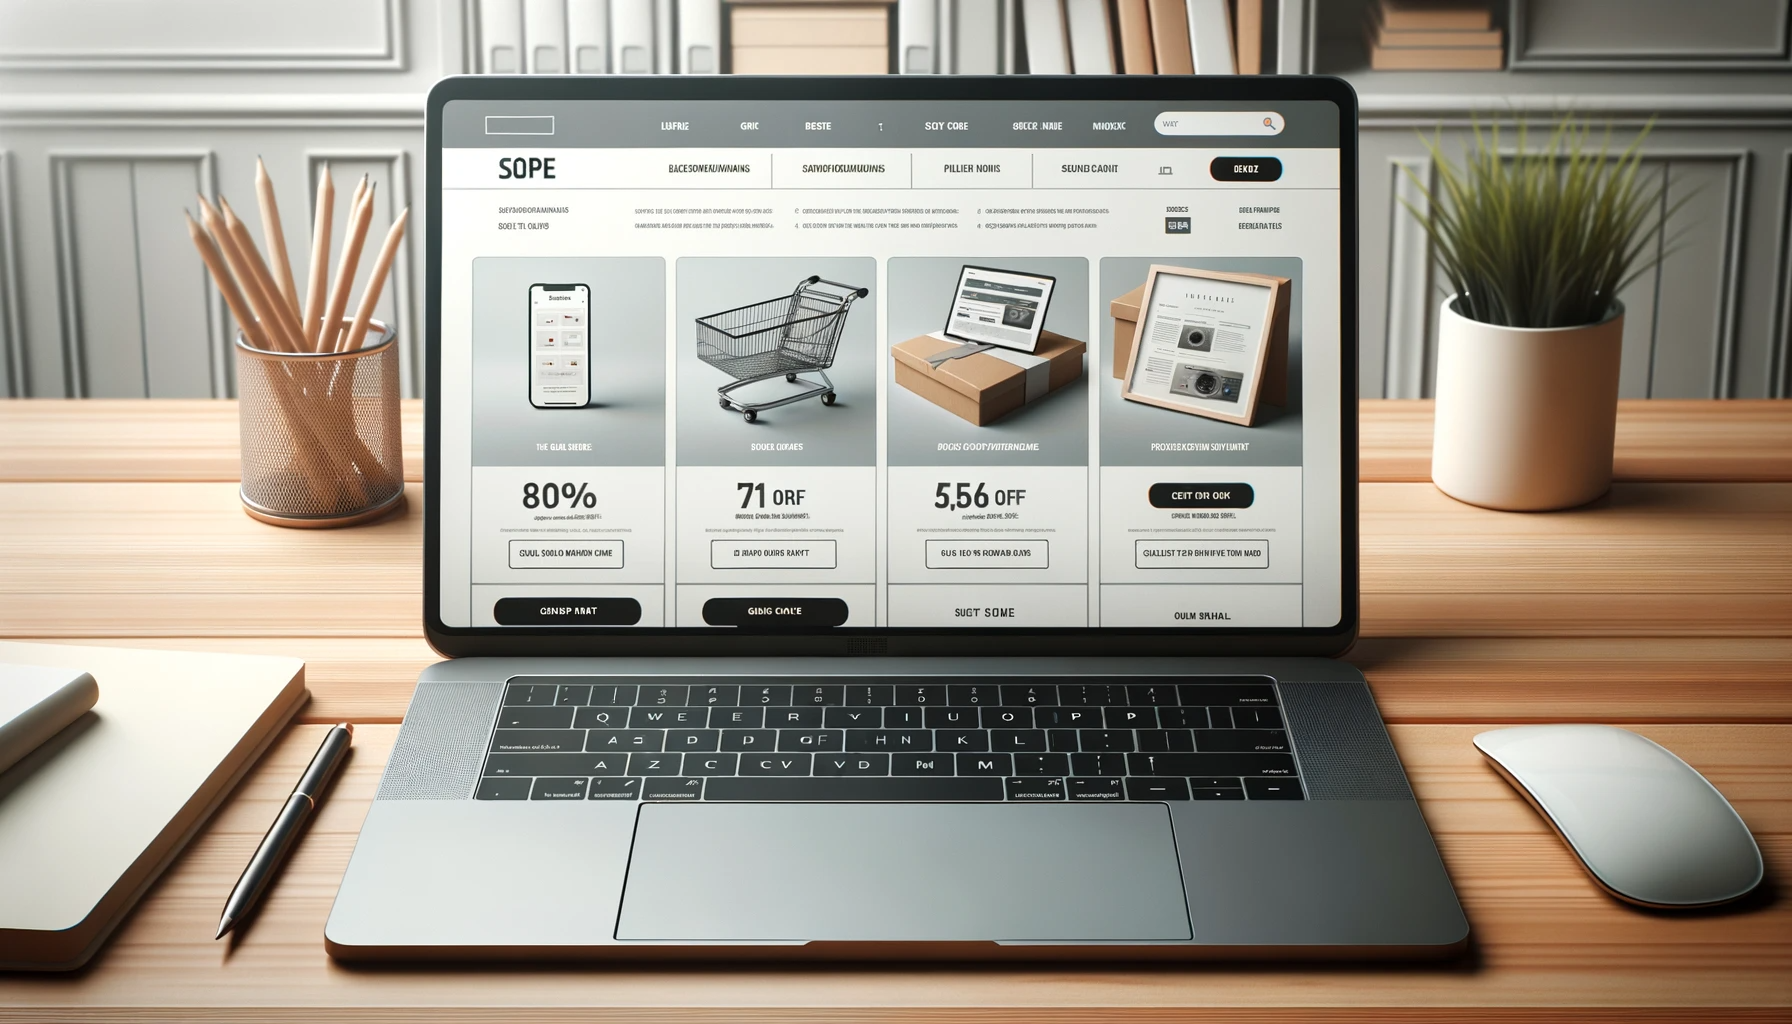 Realistična slika delovne površine z odprtim prenosnim računalnikom, ki prikazuje vmesnik spletne trgovine z izdelki, popusti in promocijami.